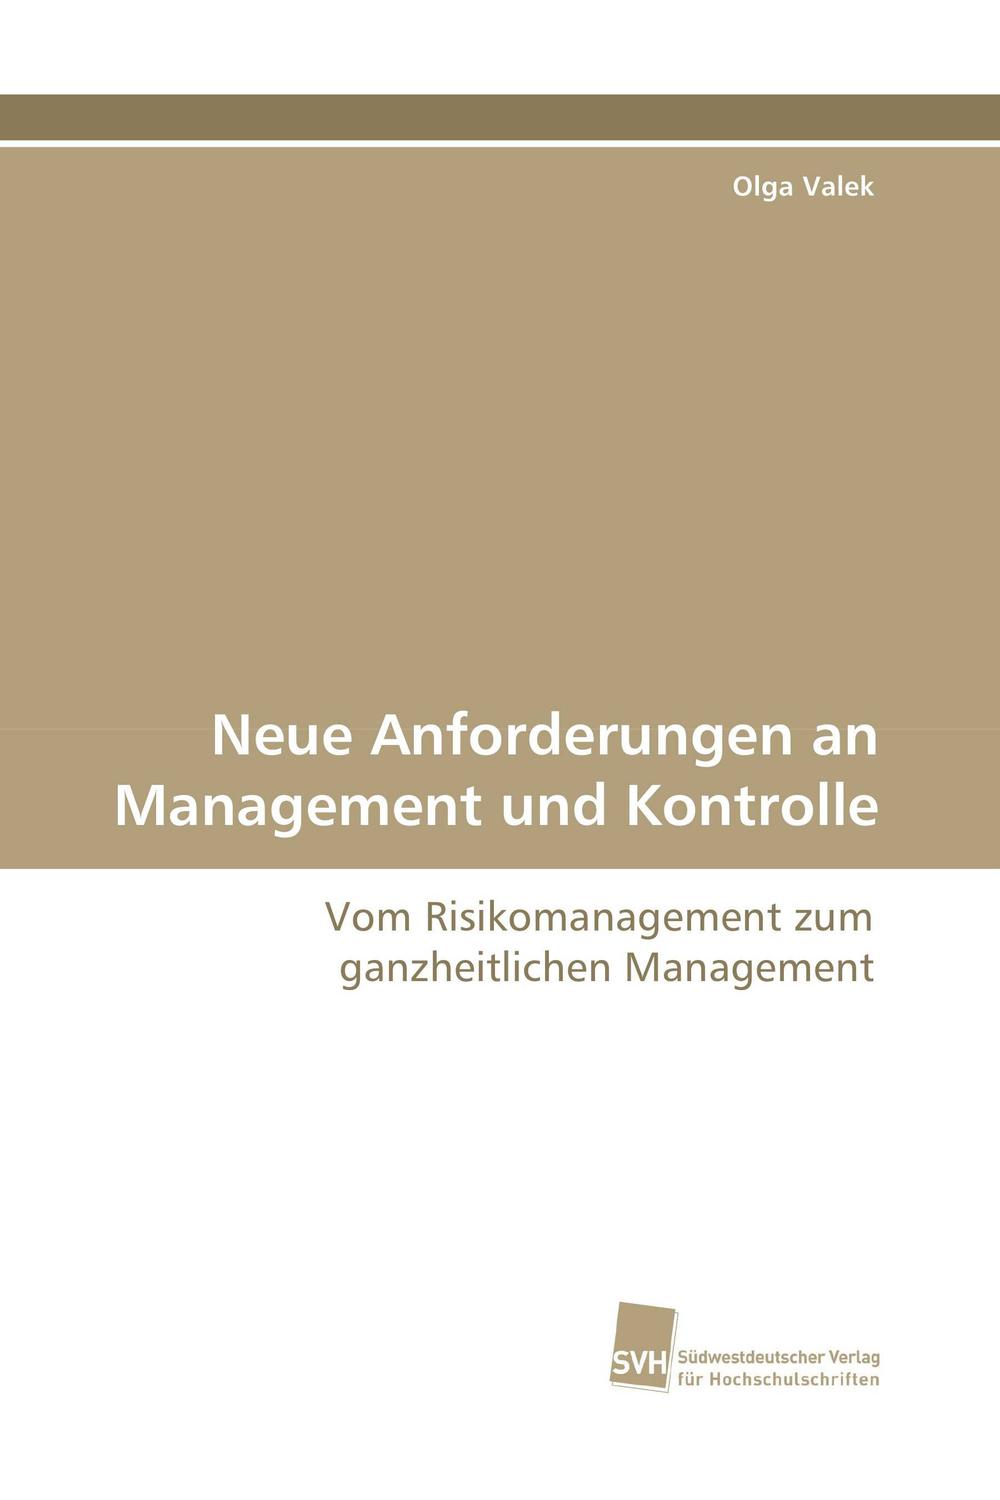 Neue Anforderungen an Management und Kontrolle - Olga Valek